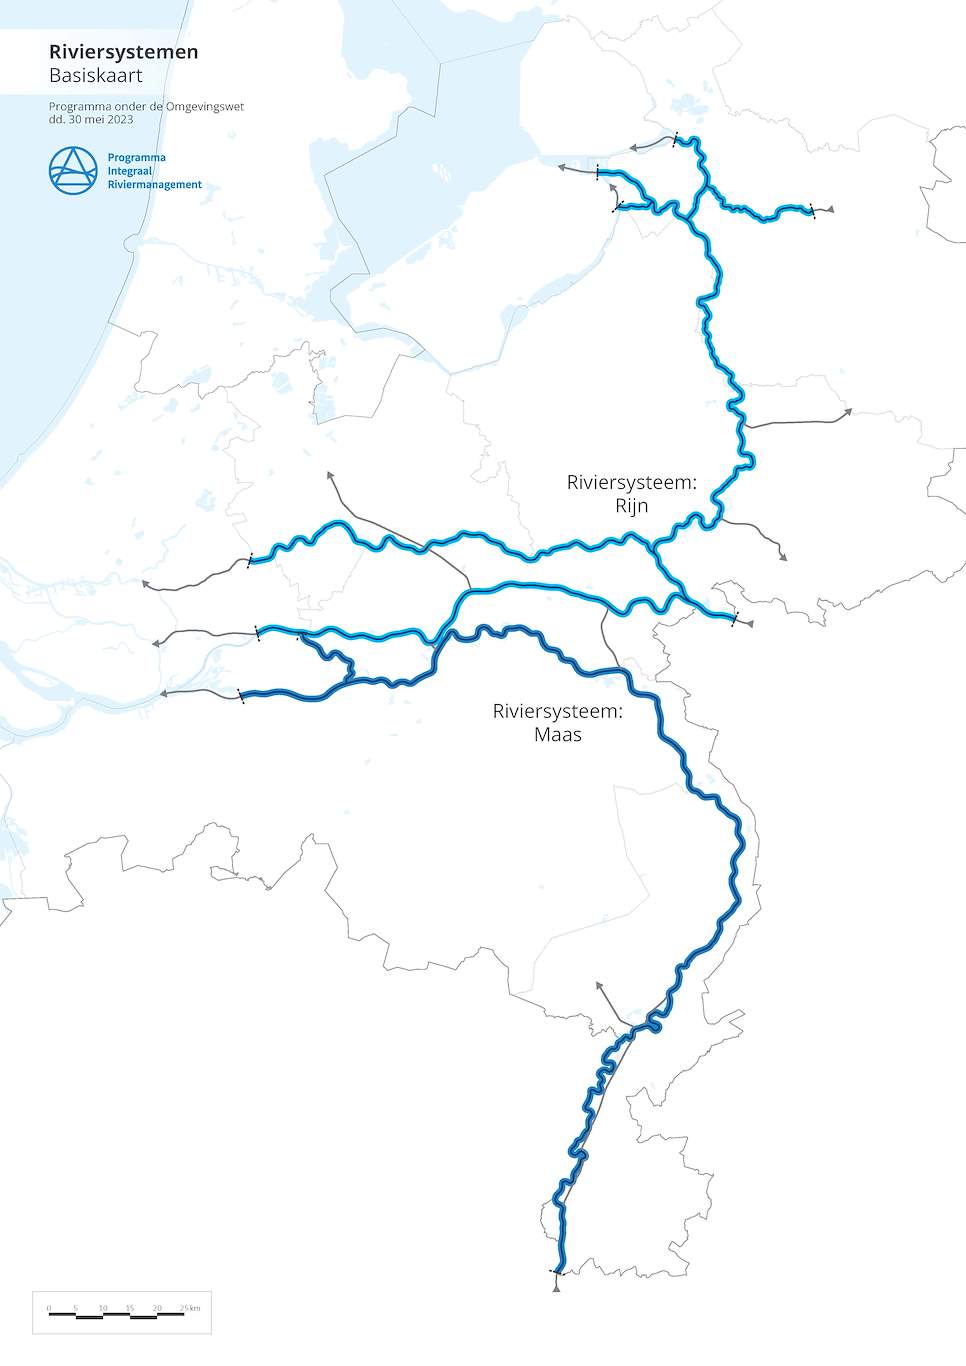 Deze afbeelding laat de Riviersystemen Maas en Rijn zien.